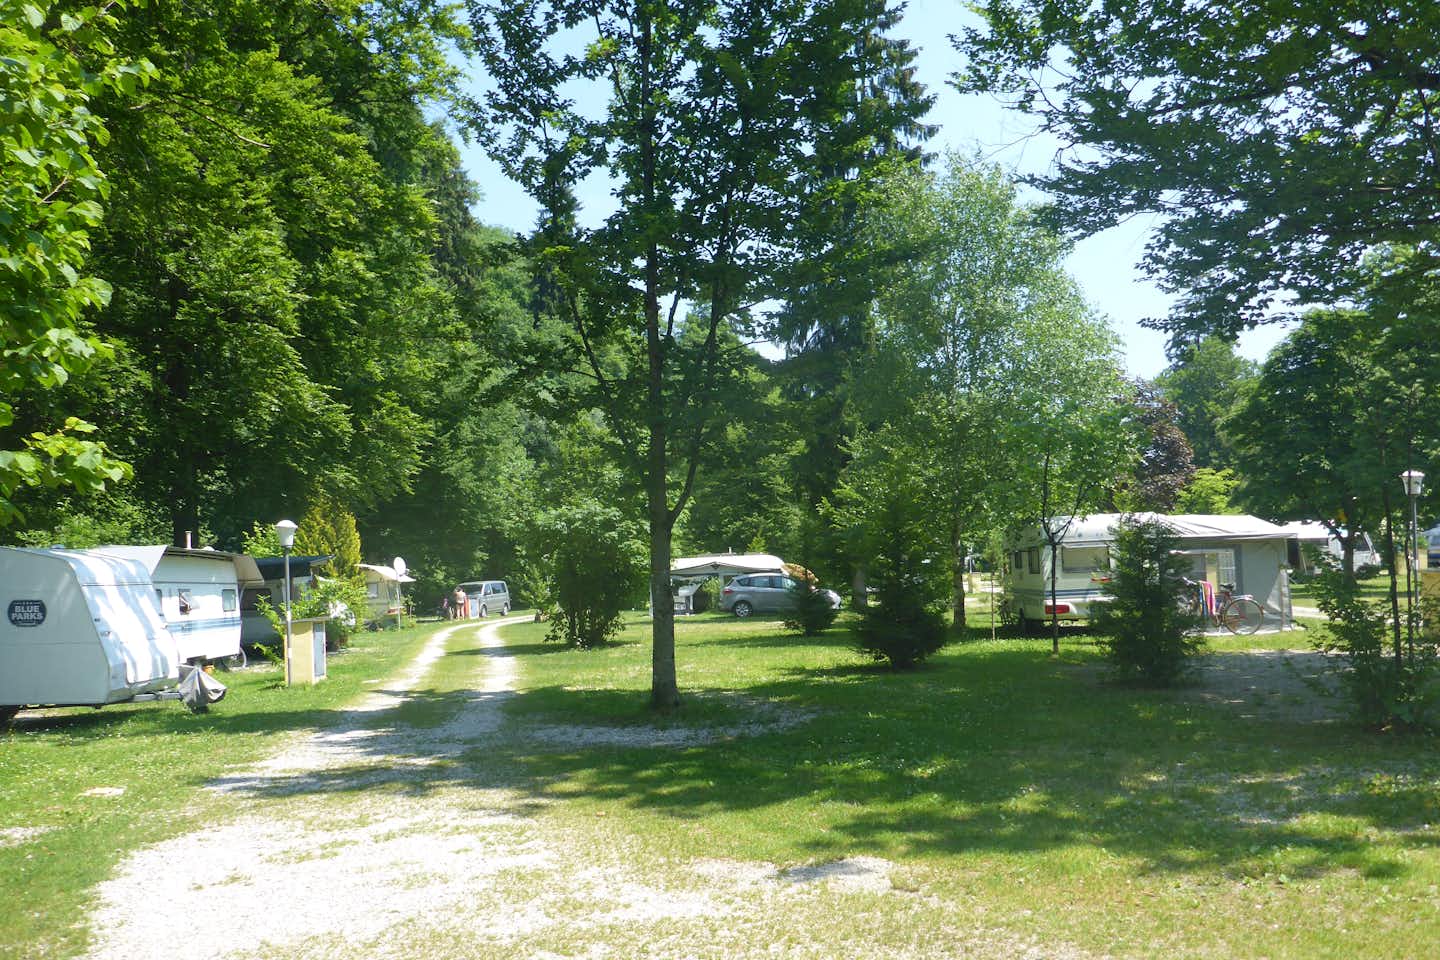 Campingplatz Staufeneck -  Wohnwagen- und Zeltstellplatz zwischen Bäumen auf dem Campingplatz